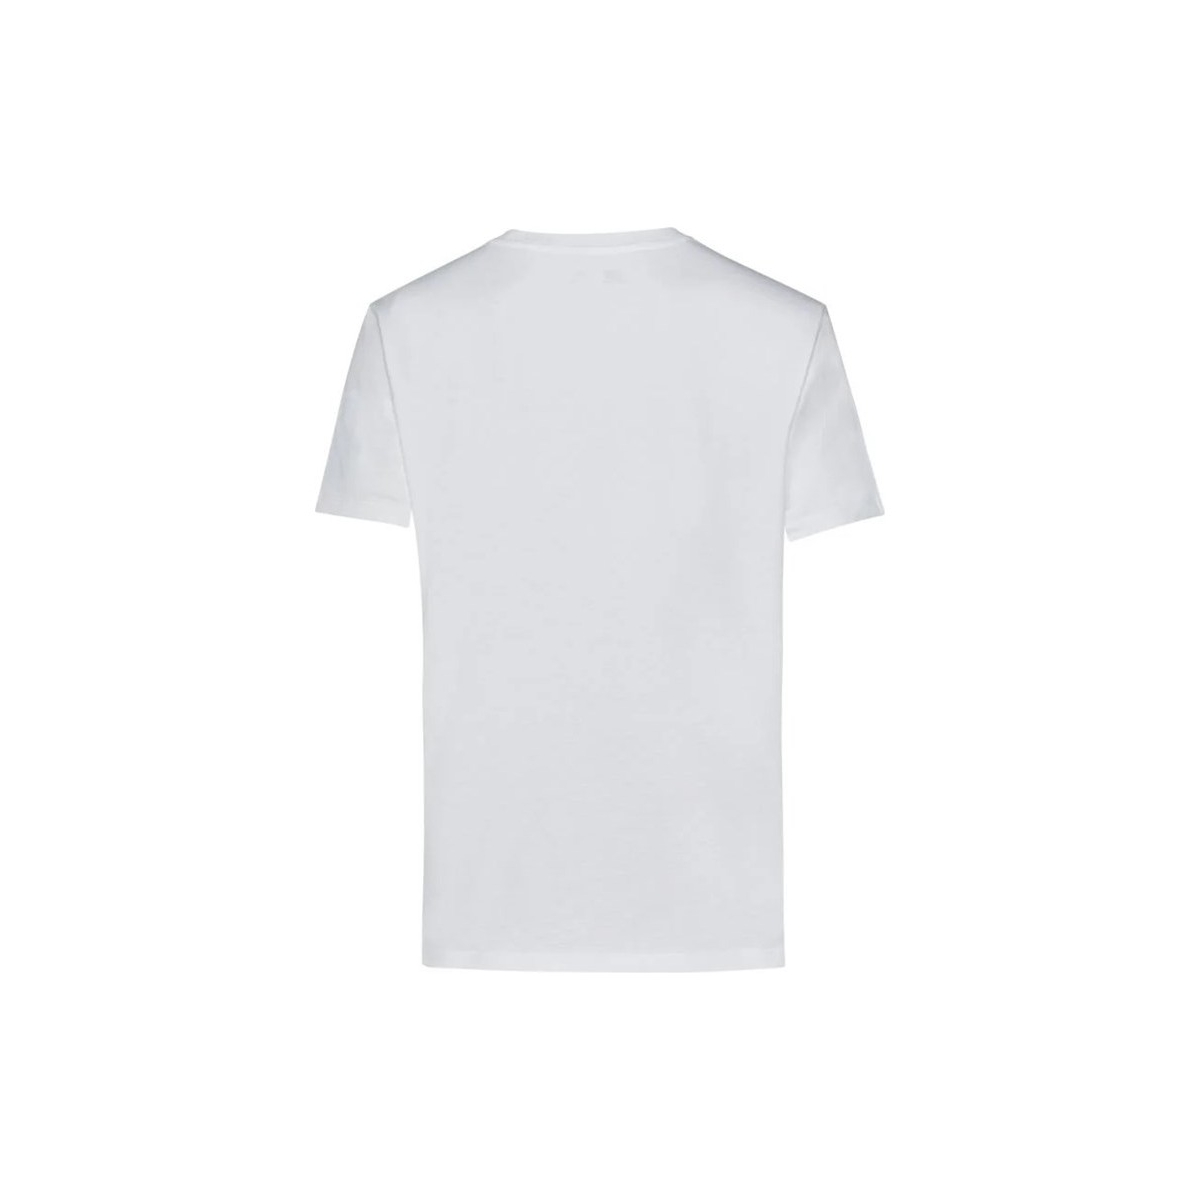 New Balance Lifestyle Erkek Beyaz Tişört (MNT1111-WT)